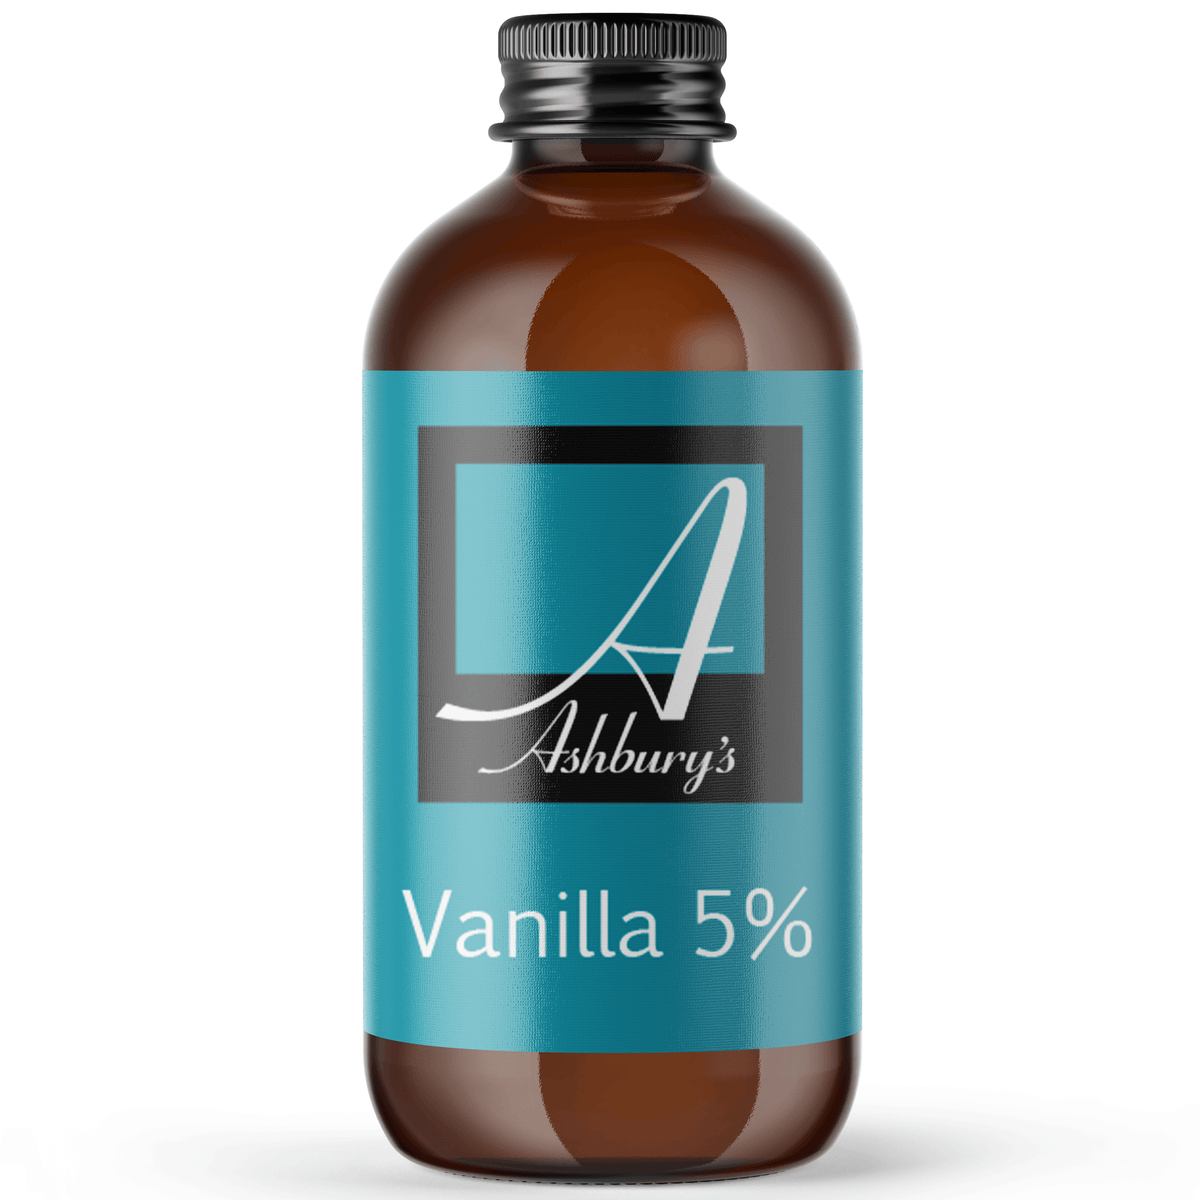 Vanilla, Absolute (Vanilla planifolia) 5% in Jojoba